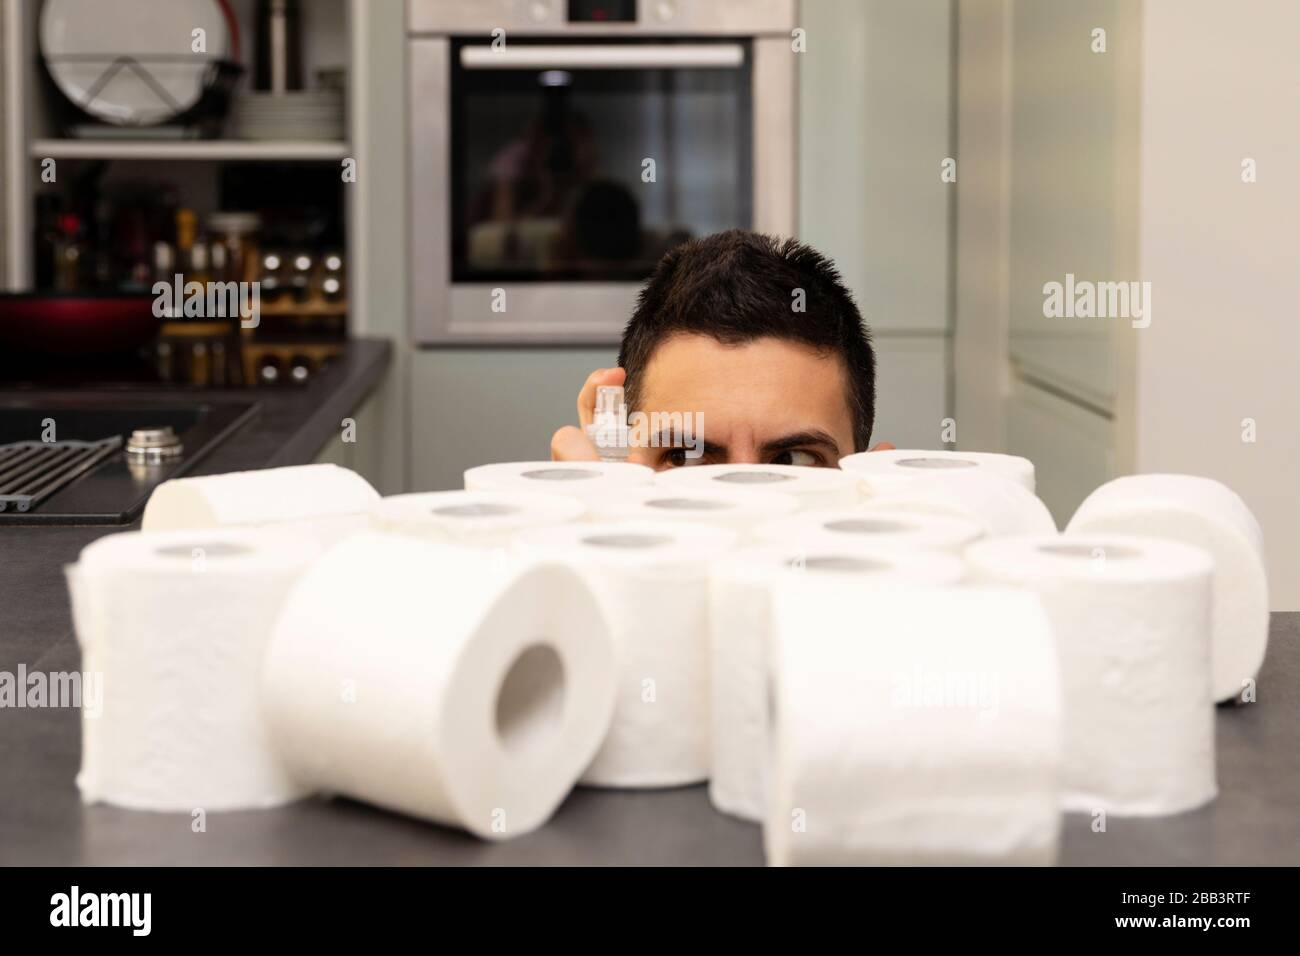 Un uomo gioisce sulla carta igienica acquisita a causa del panico e della carenza causati dallo scoppio del virus covid19. Foto concettuale su Foto Stock